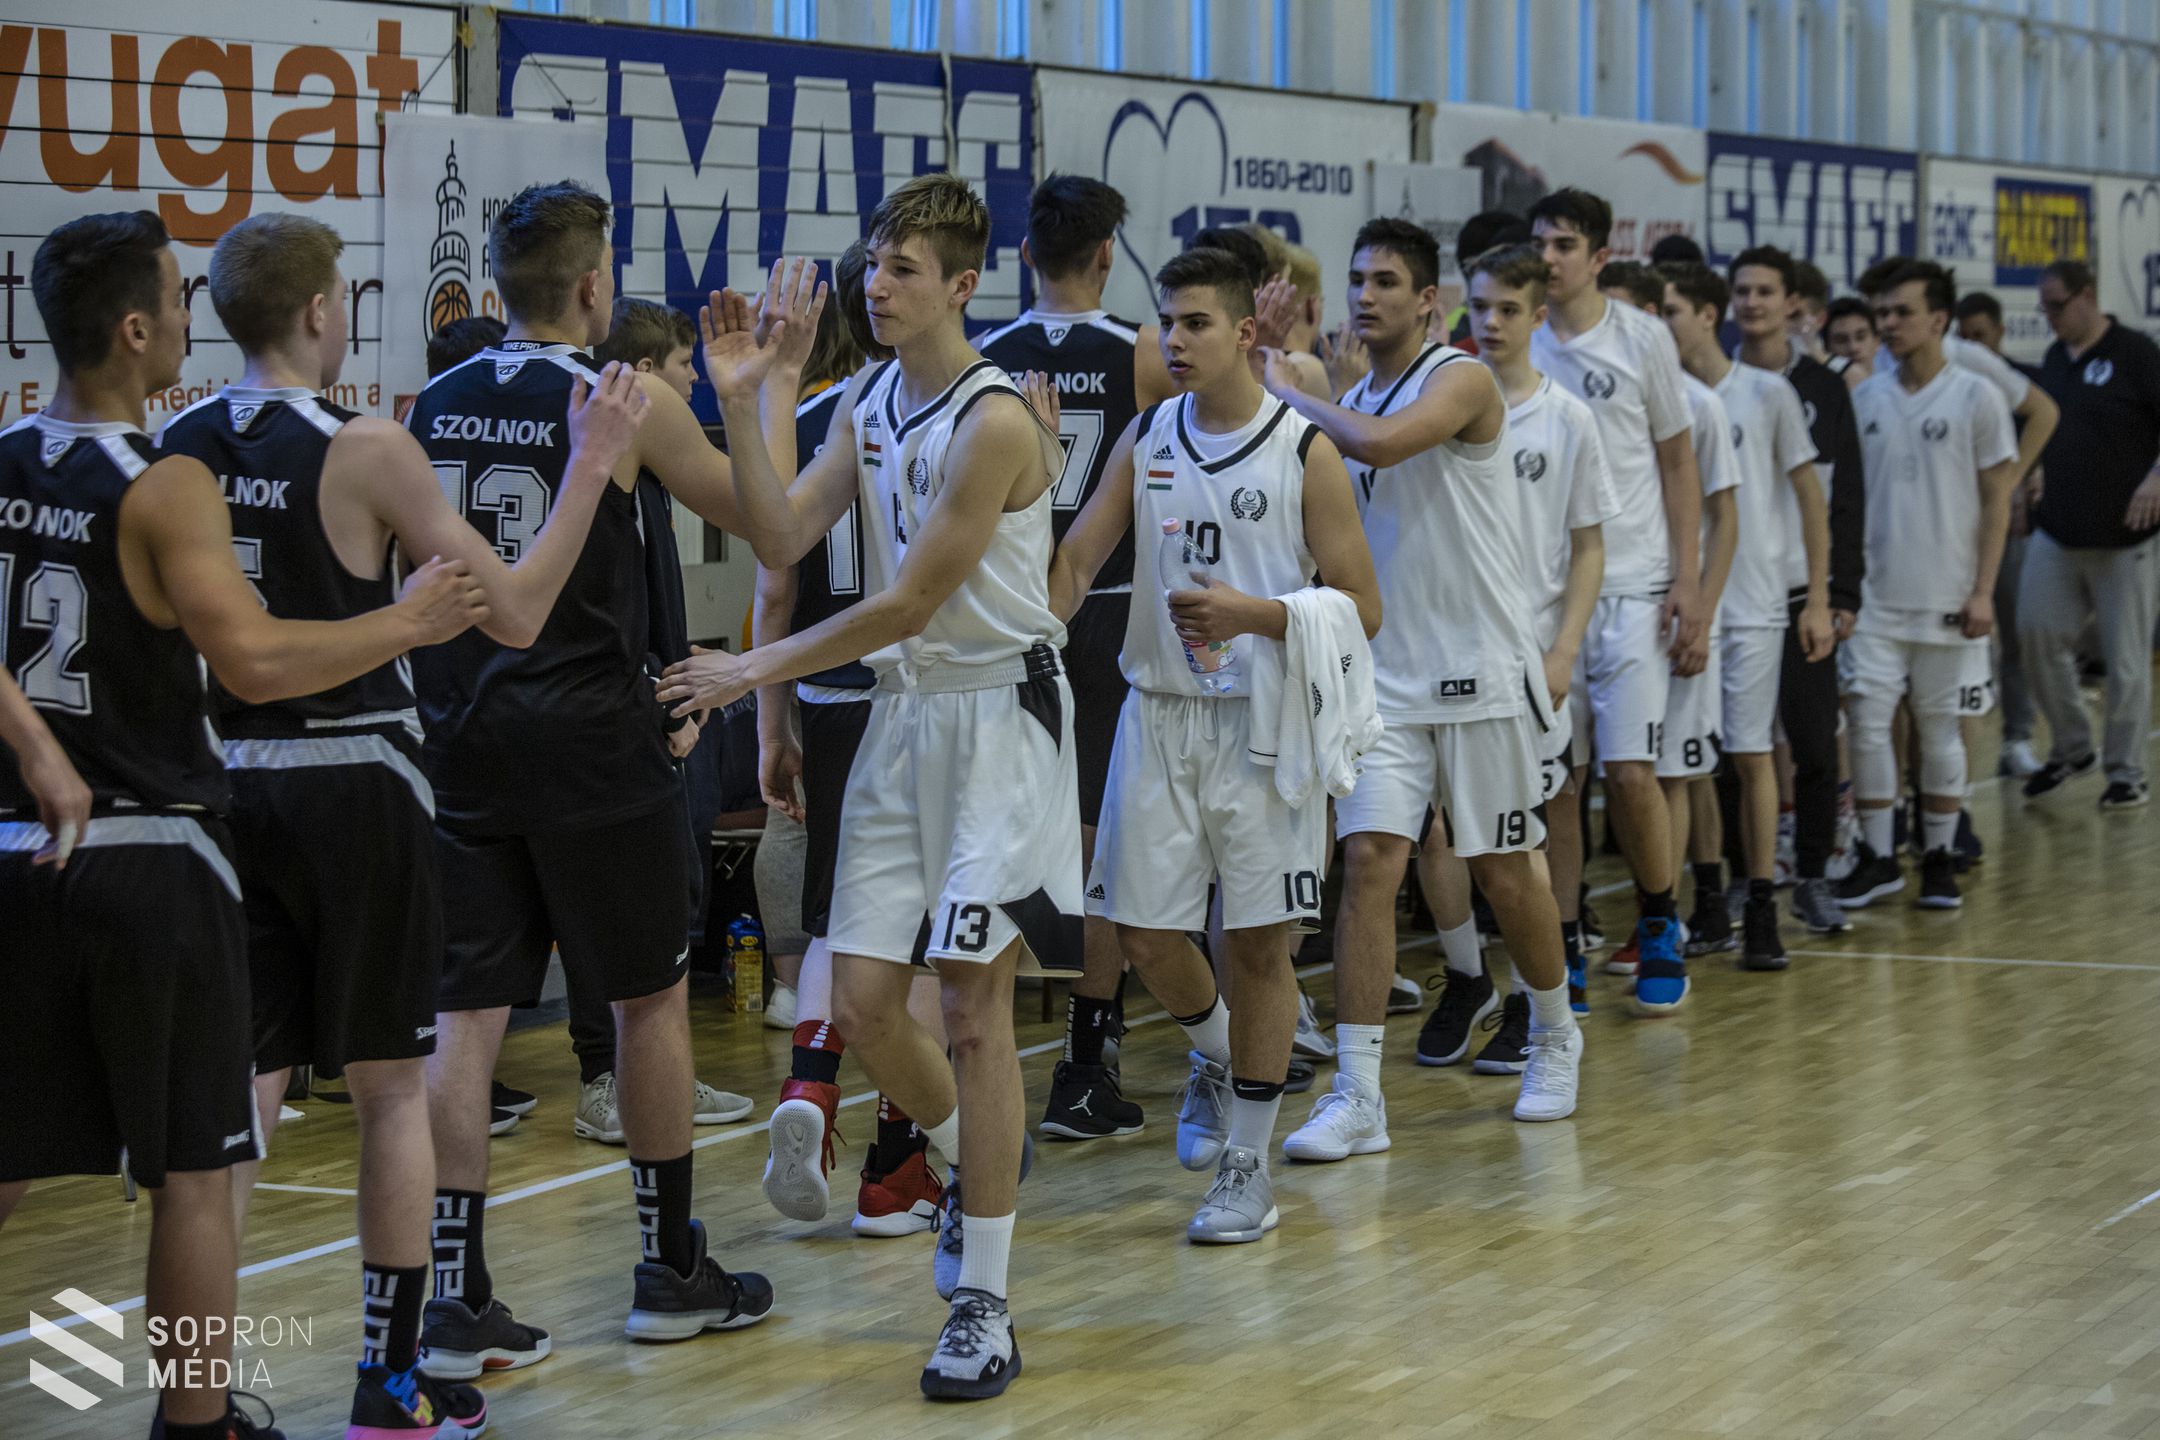 Kosárlabda - Sopron ad otthont a Fiú Kadett Országos Döntőnek